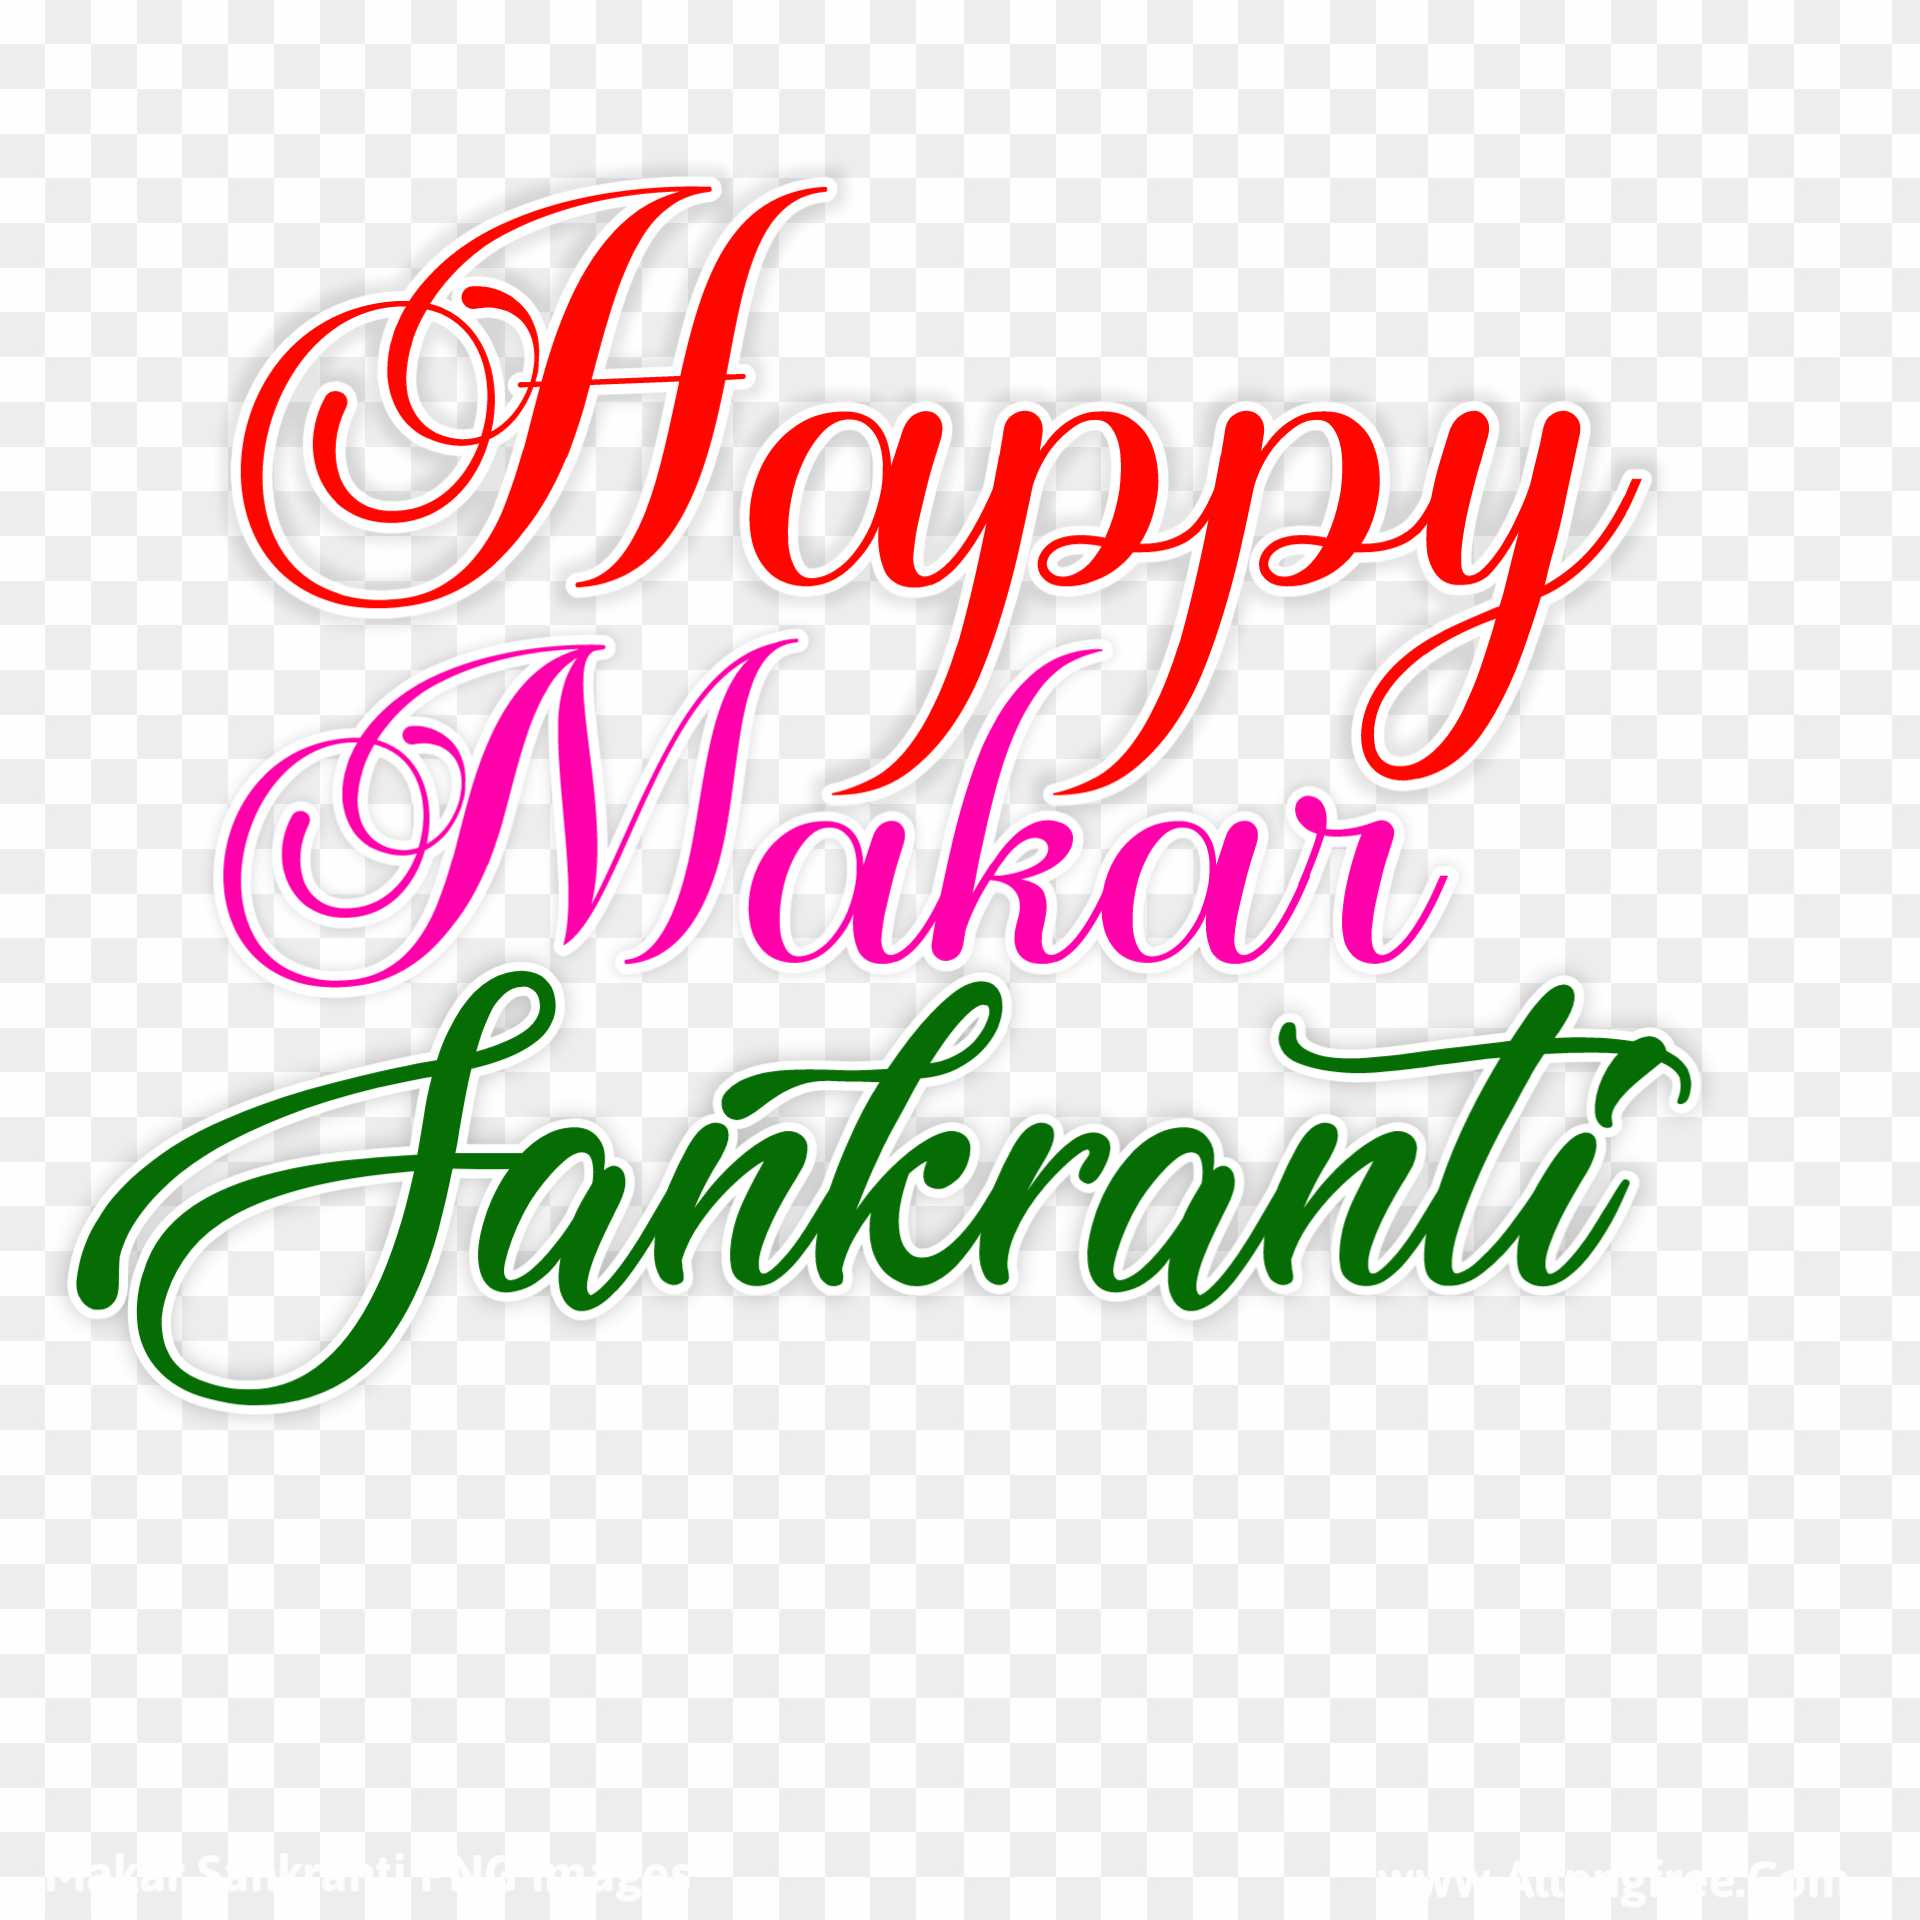 Happy Makar sakranti text PNG images